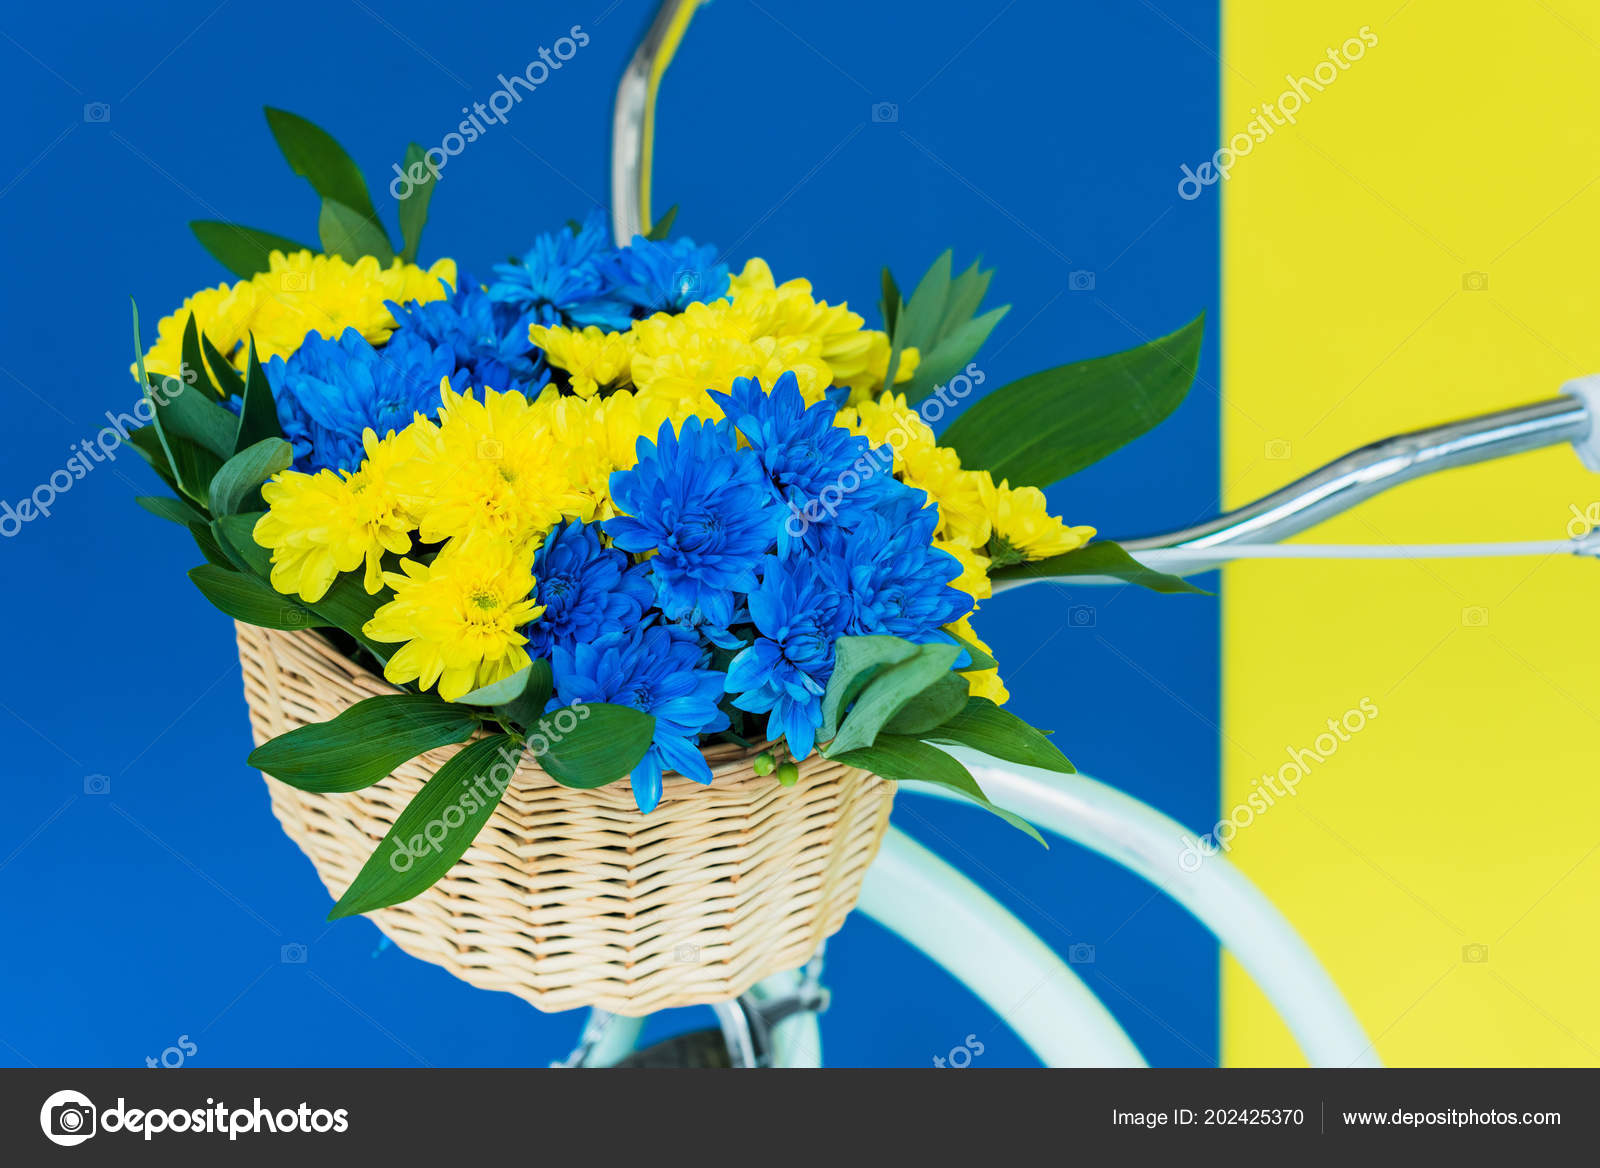 Basket Chrysanthemum Flowers Bicycle Isolated Blue Yellow Background Free Stock Photo C Igorvetushko 202425370